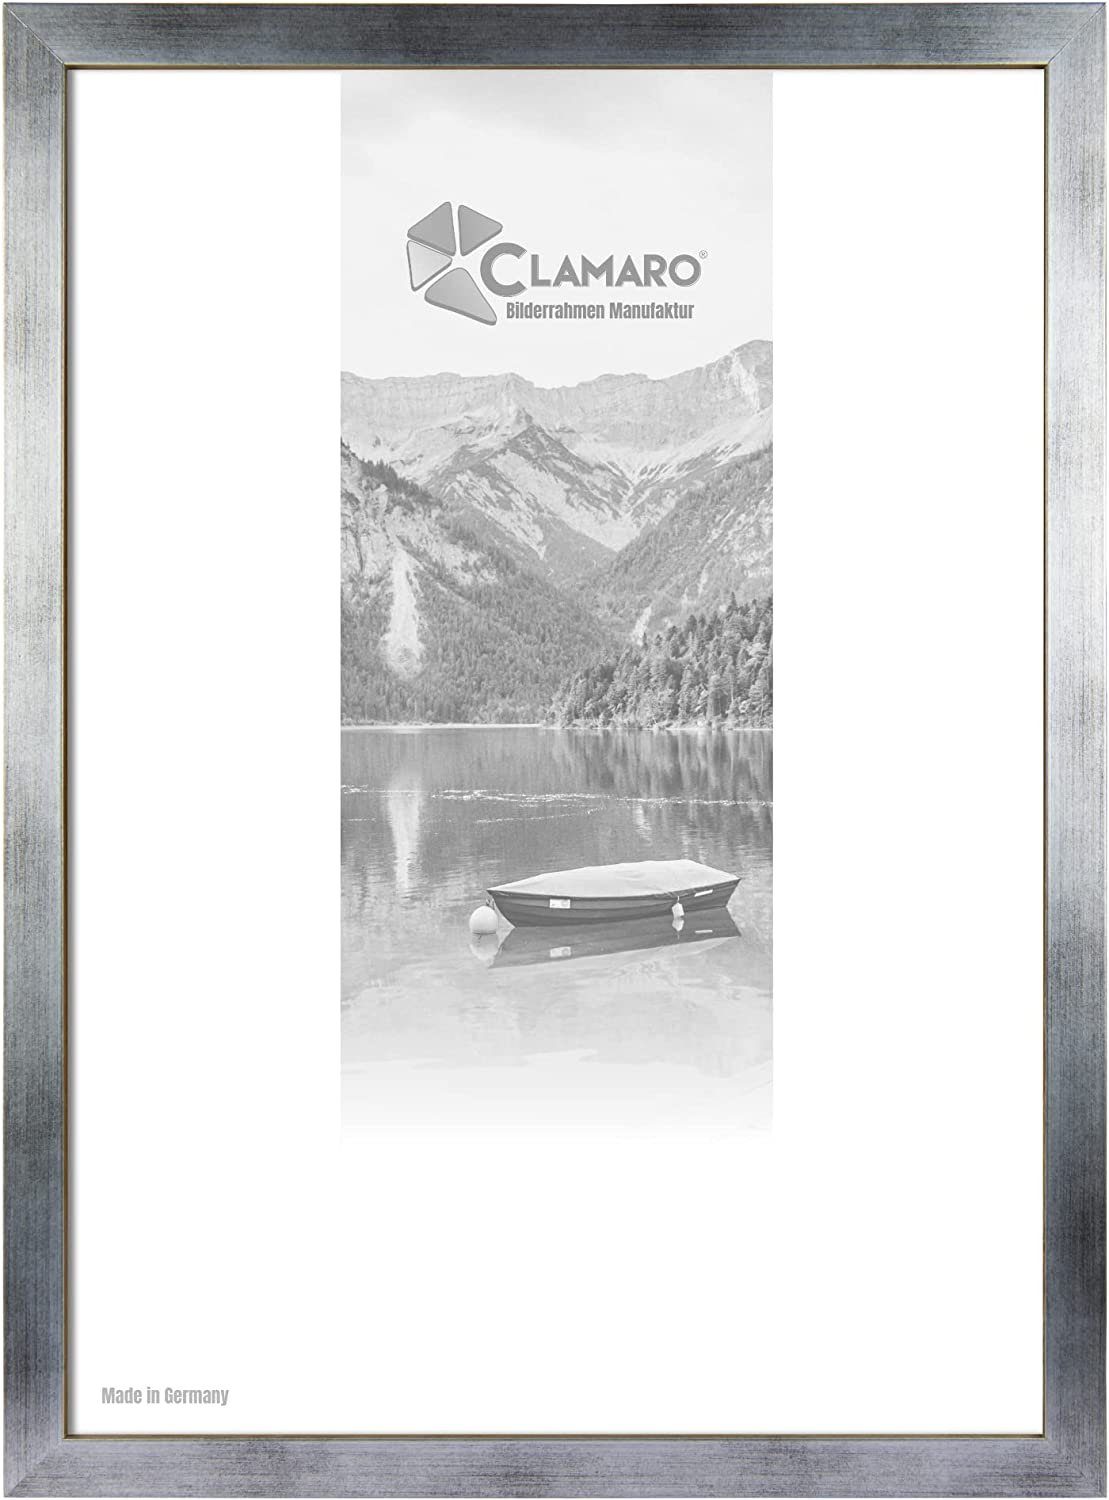 Clamaro Bilderrahmen Bilderrahmen Silber Gebürstet CLAMARO Collage nach Maß FSC® Holz Modern eckig M3016 17x17 in Silber Gebürstet